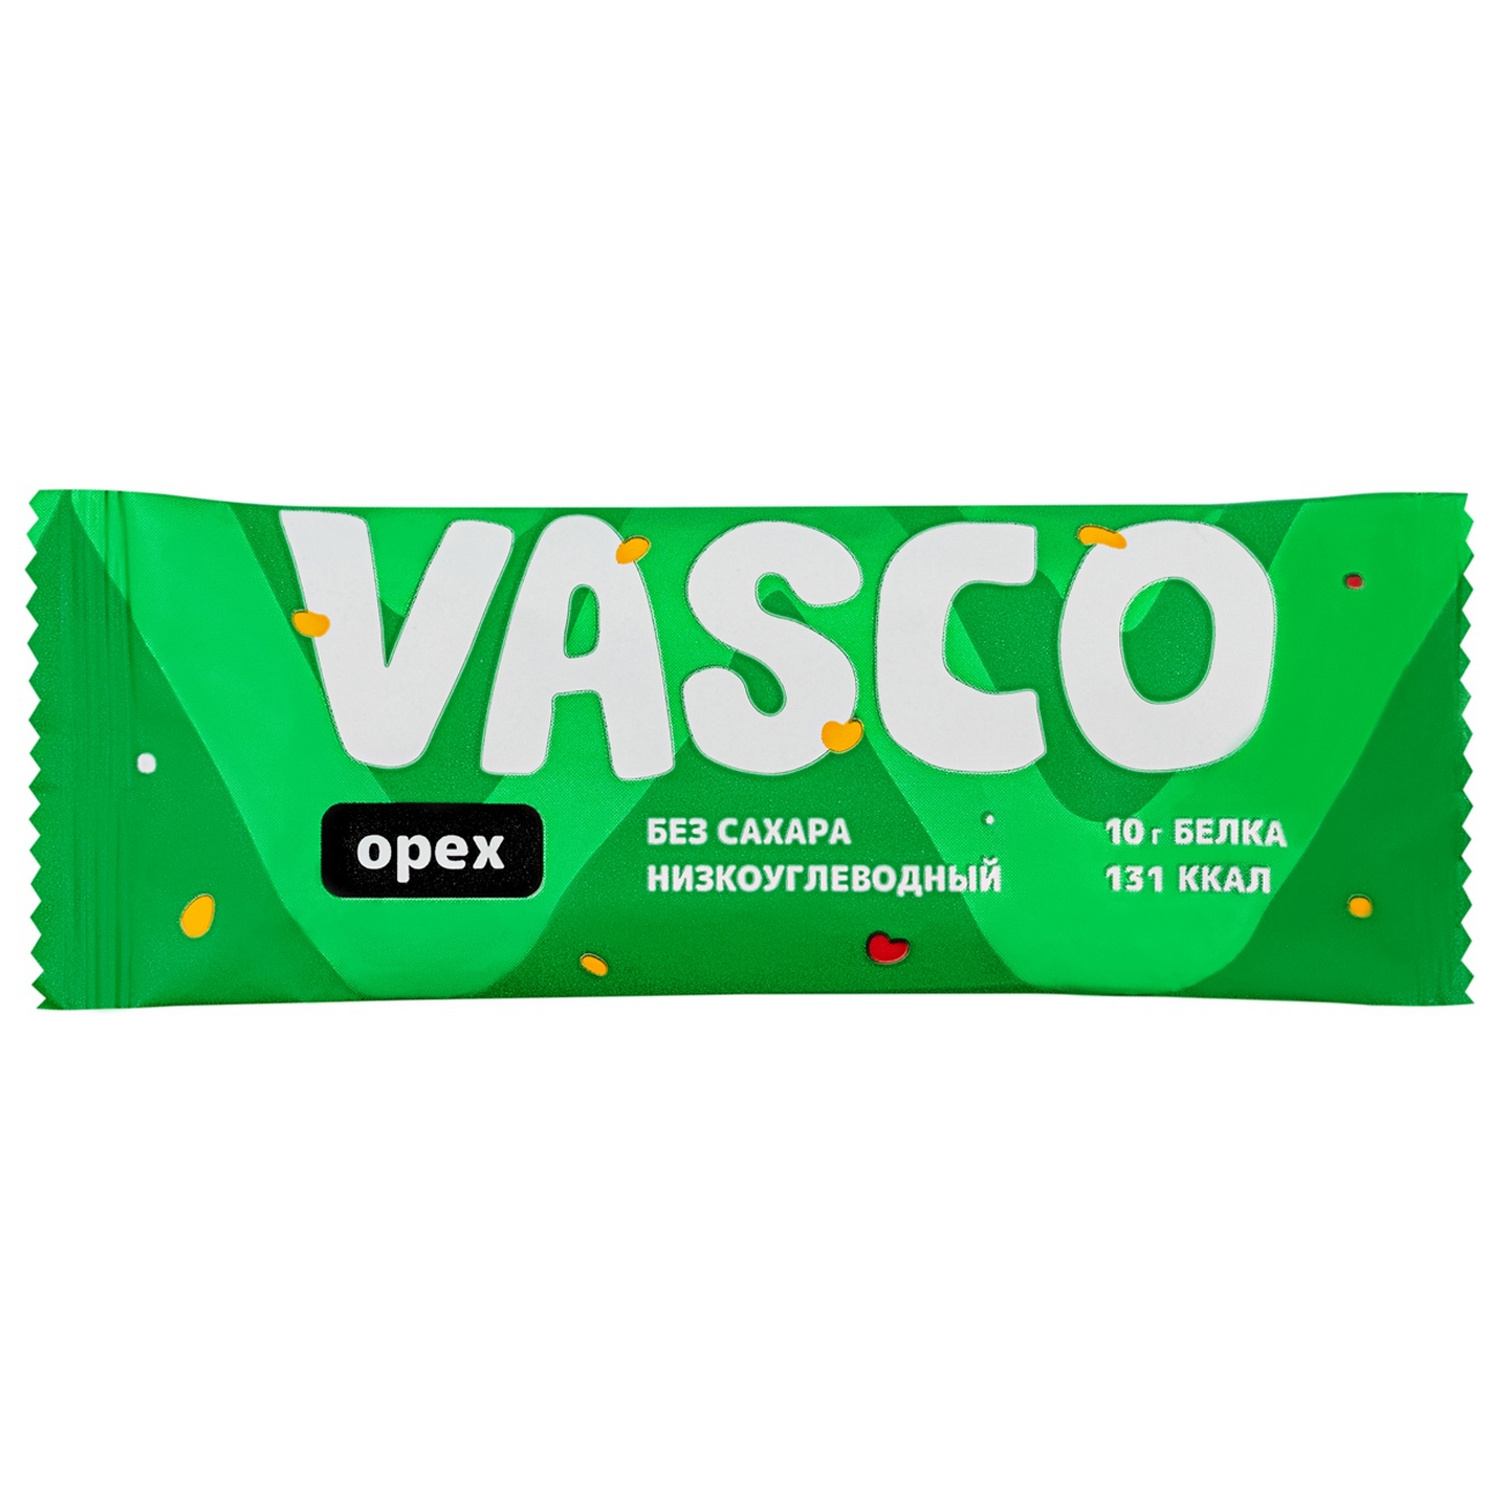 Батончик Vasco низкоуглеводный орех 40г - фото 1